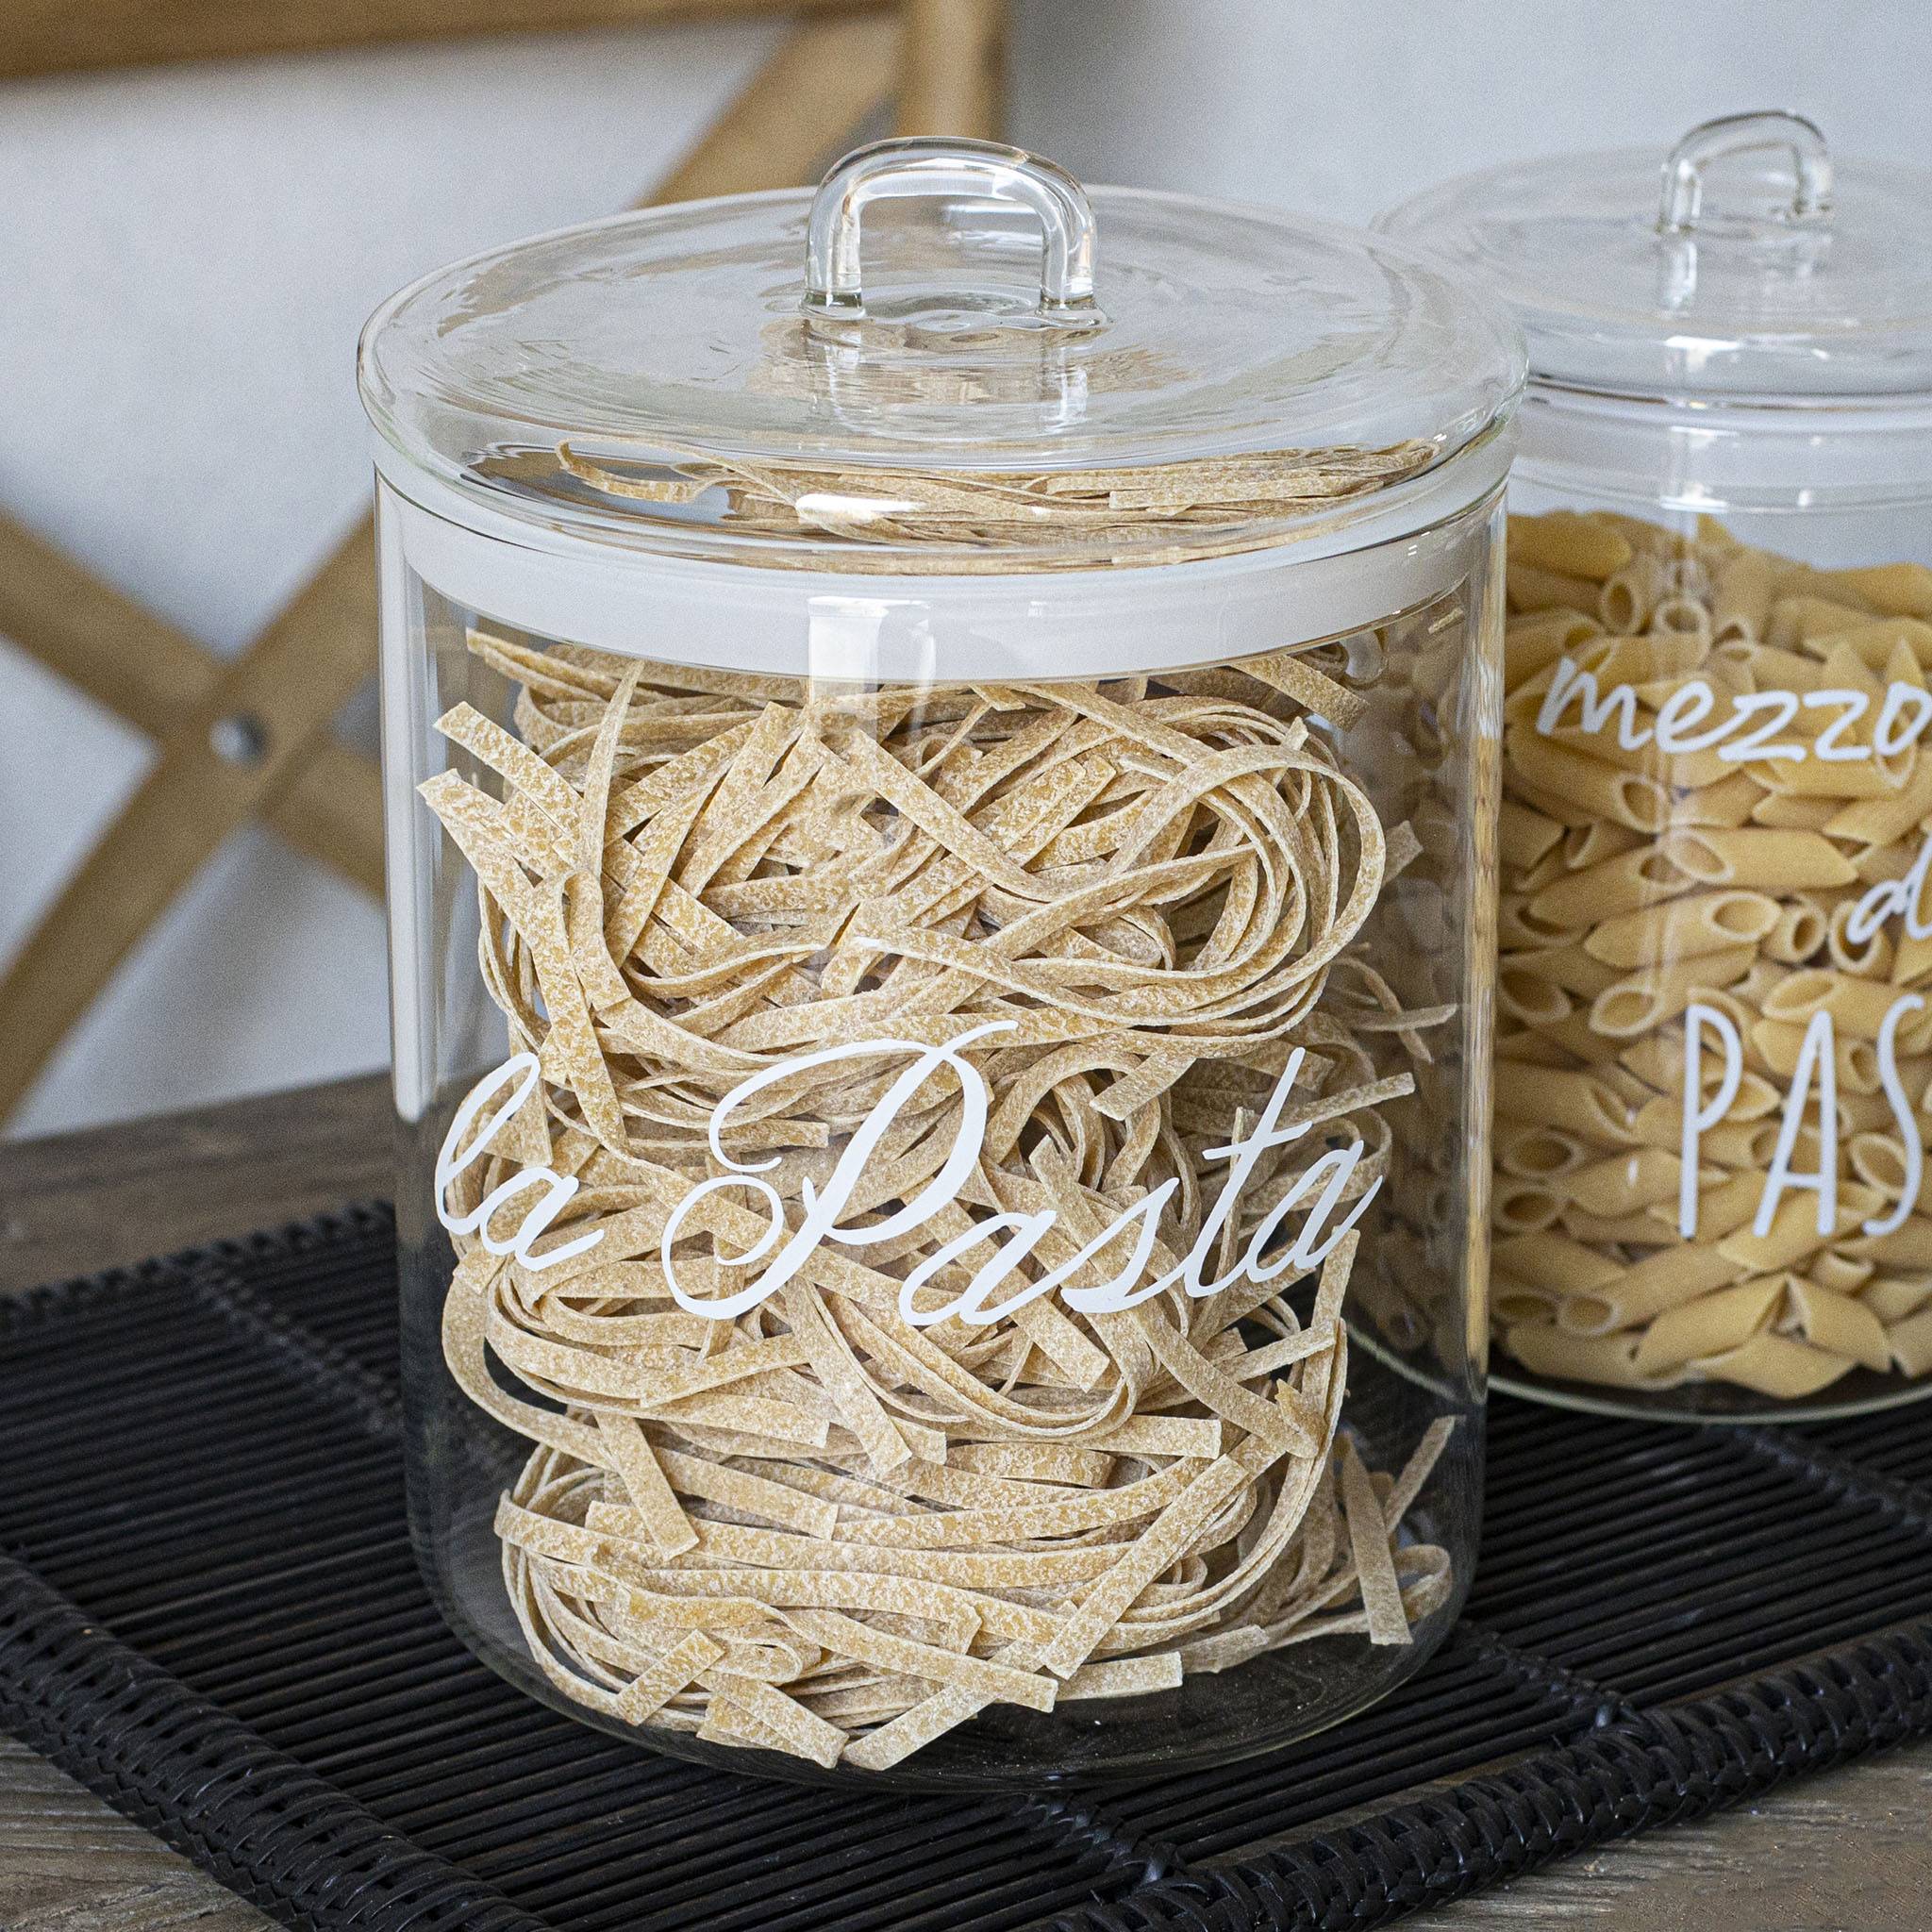 Una collezione di pasta in barattoli con sopra diversi tipi di pasta.